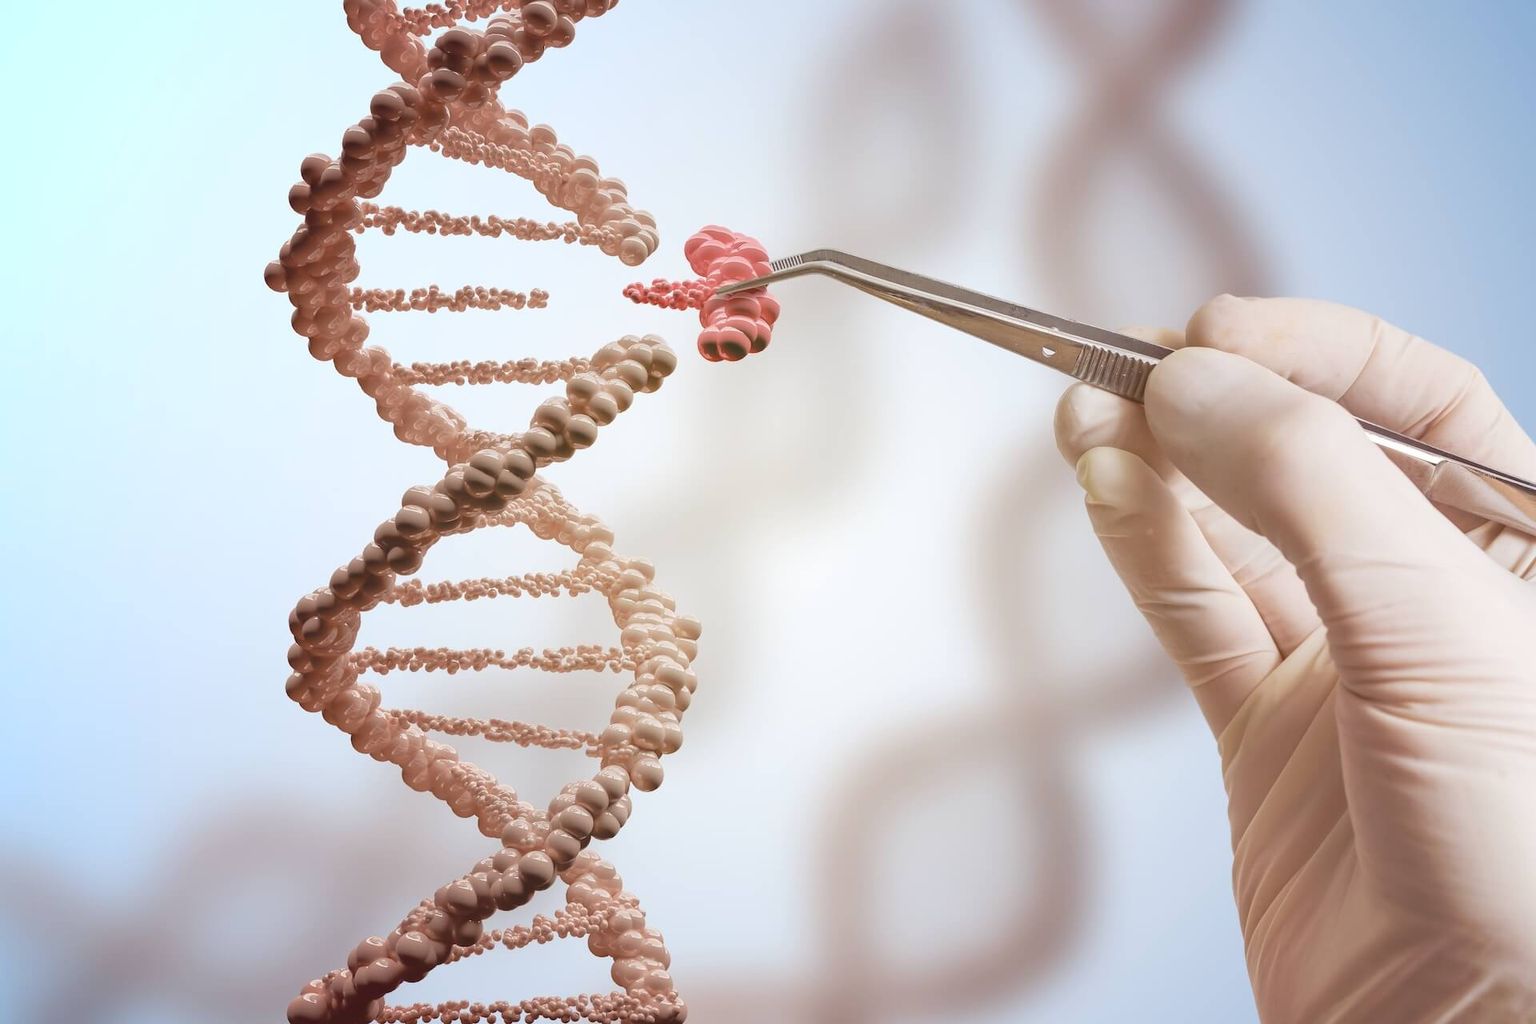 Concept de génie génétique et de manipulation génétique. La main remplace une partie d'une molécule d'ADN. Représentation 3D de l'ADN.